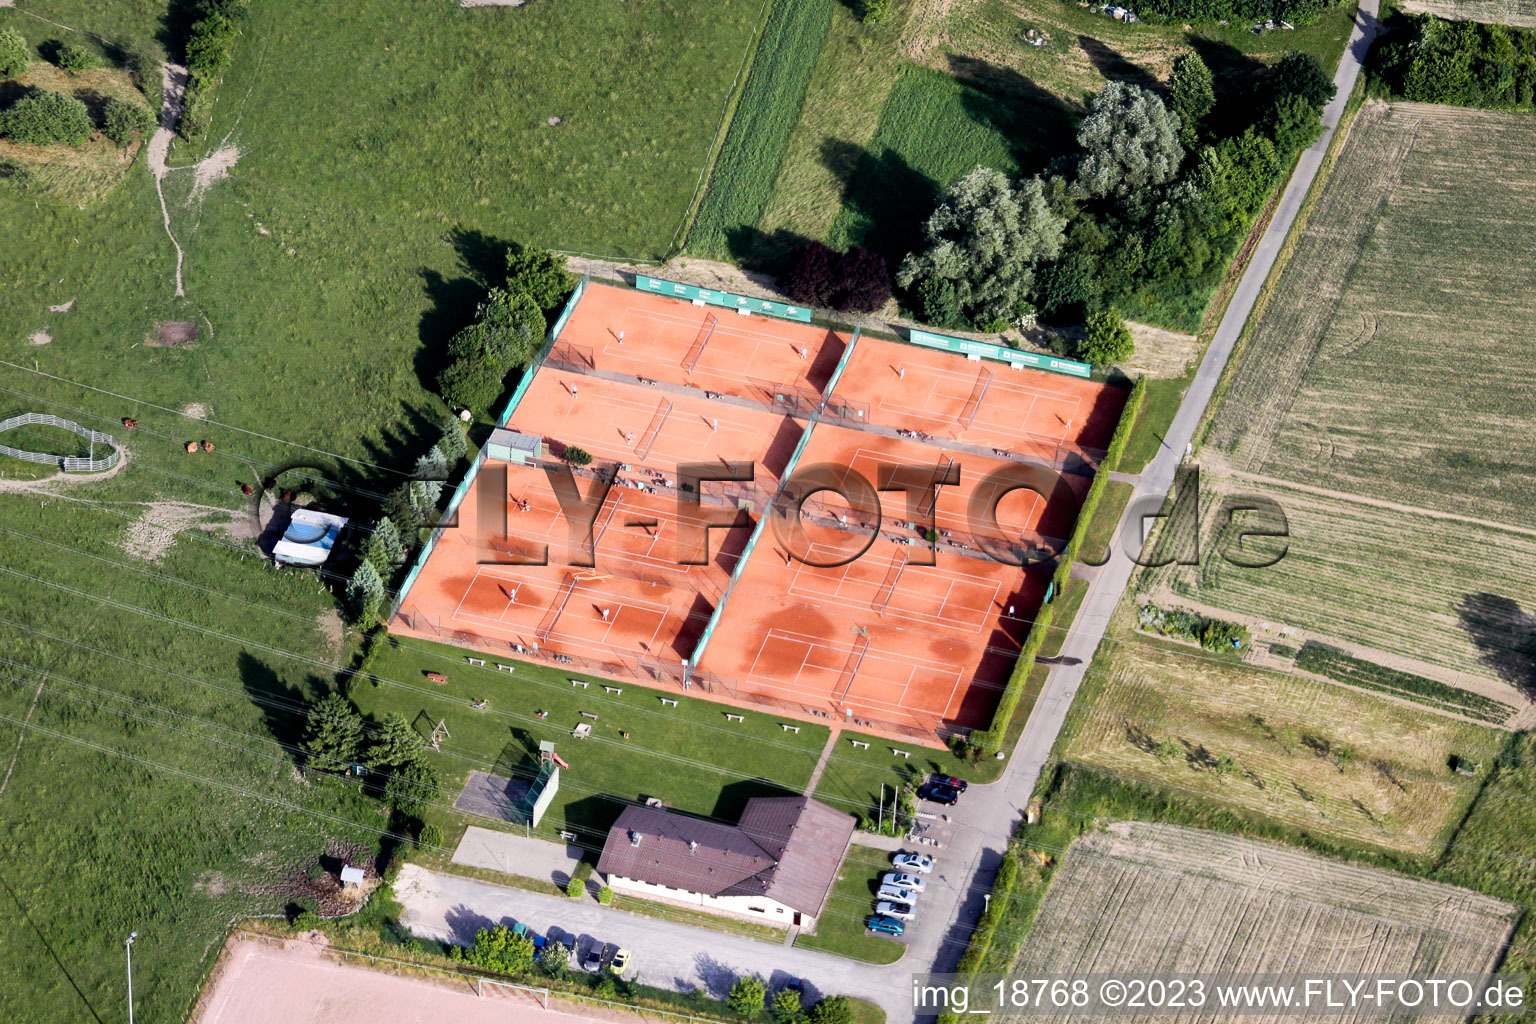 Vue aérienne de Club de tennis à Elchesheim dans le département Bade-Wurtemberg, Allemagne